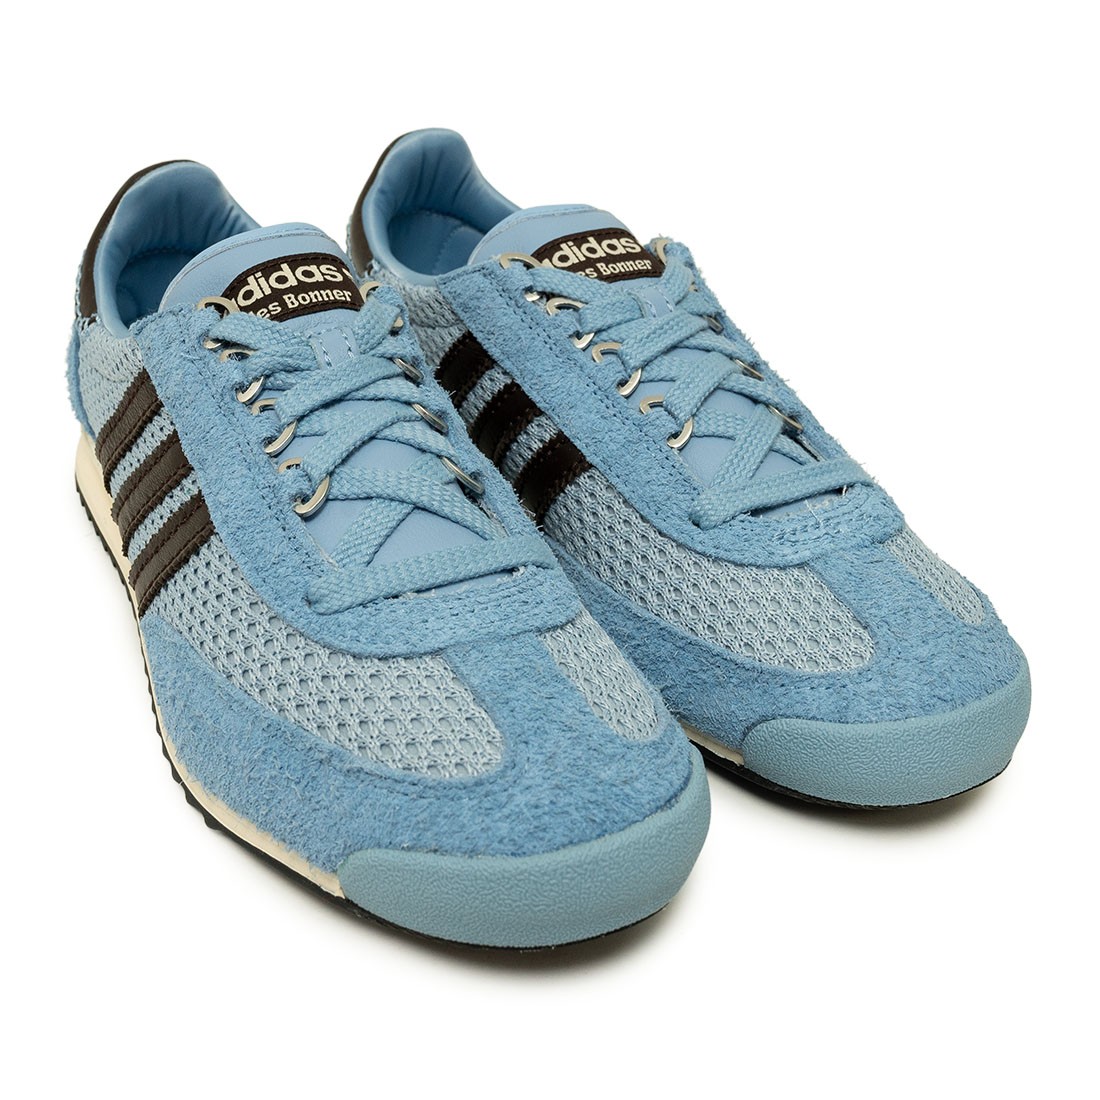 Adidas x Wales Bonner Men SL76 (blue / ash blue / core black/)